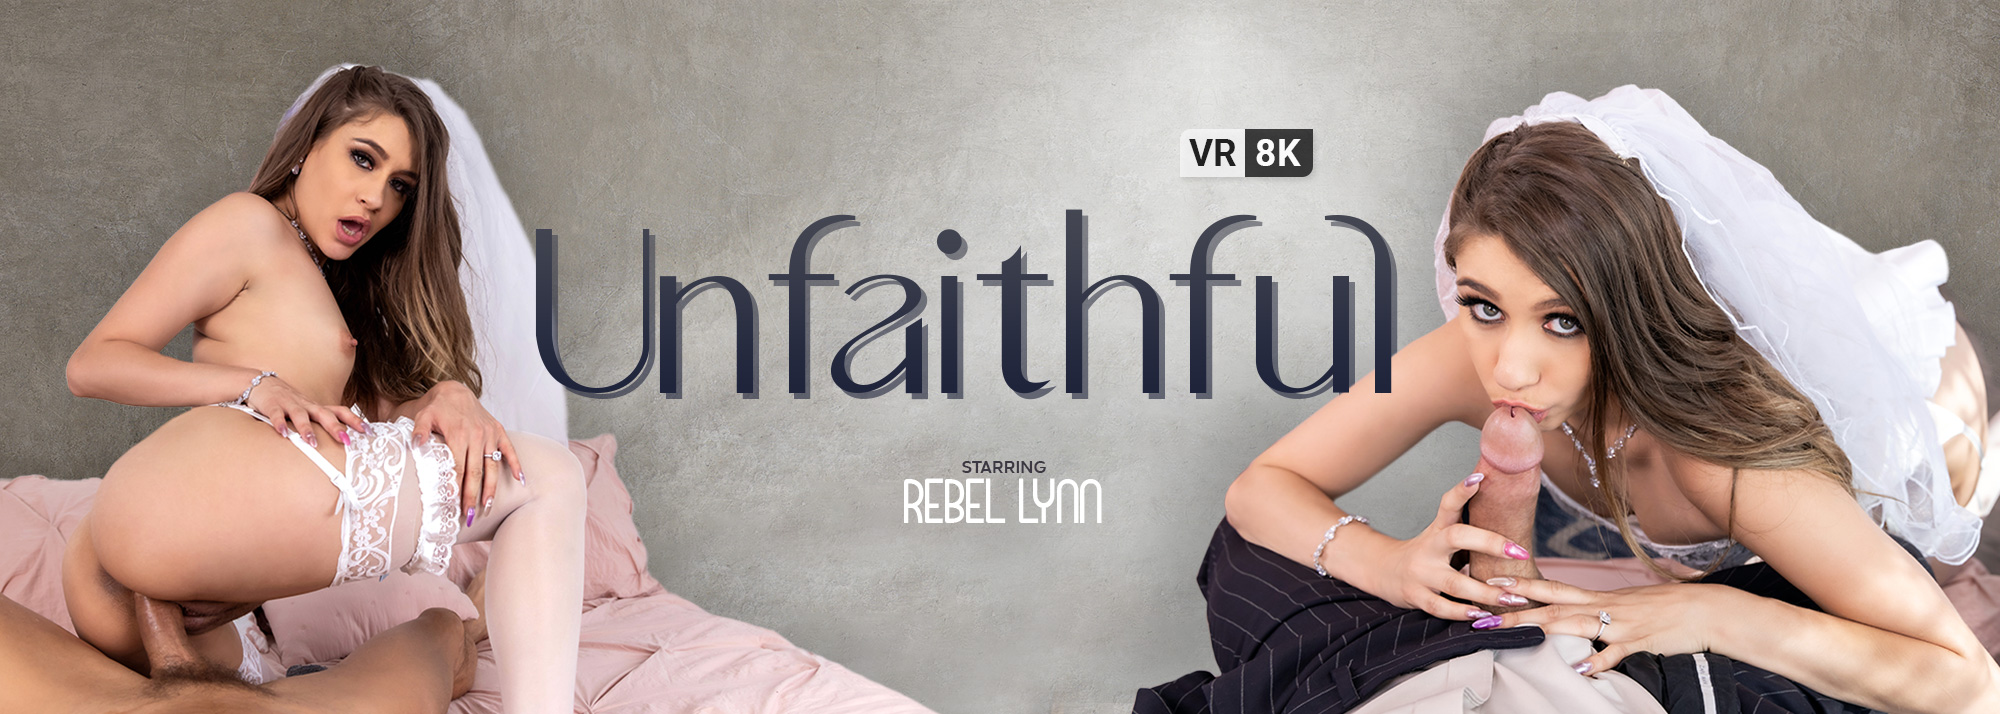 Unfaithful - VR Porn Video, Starring: Rebel Lynn